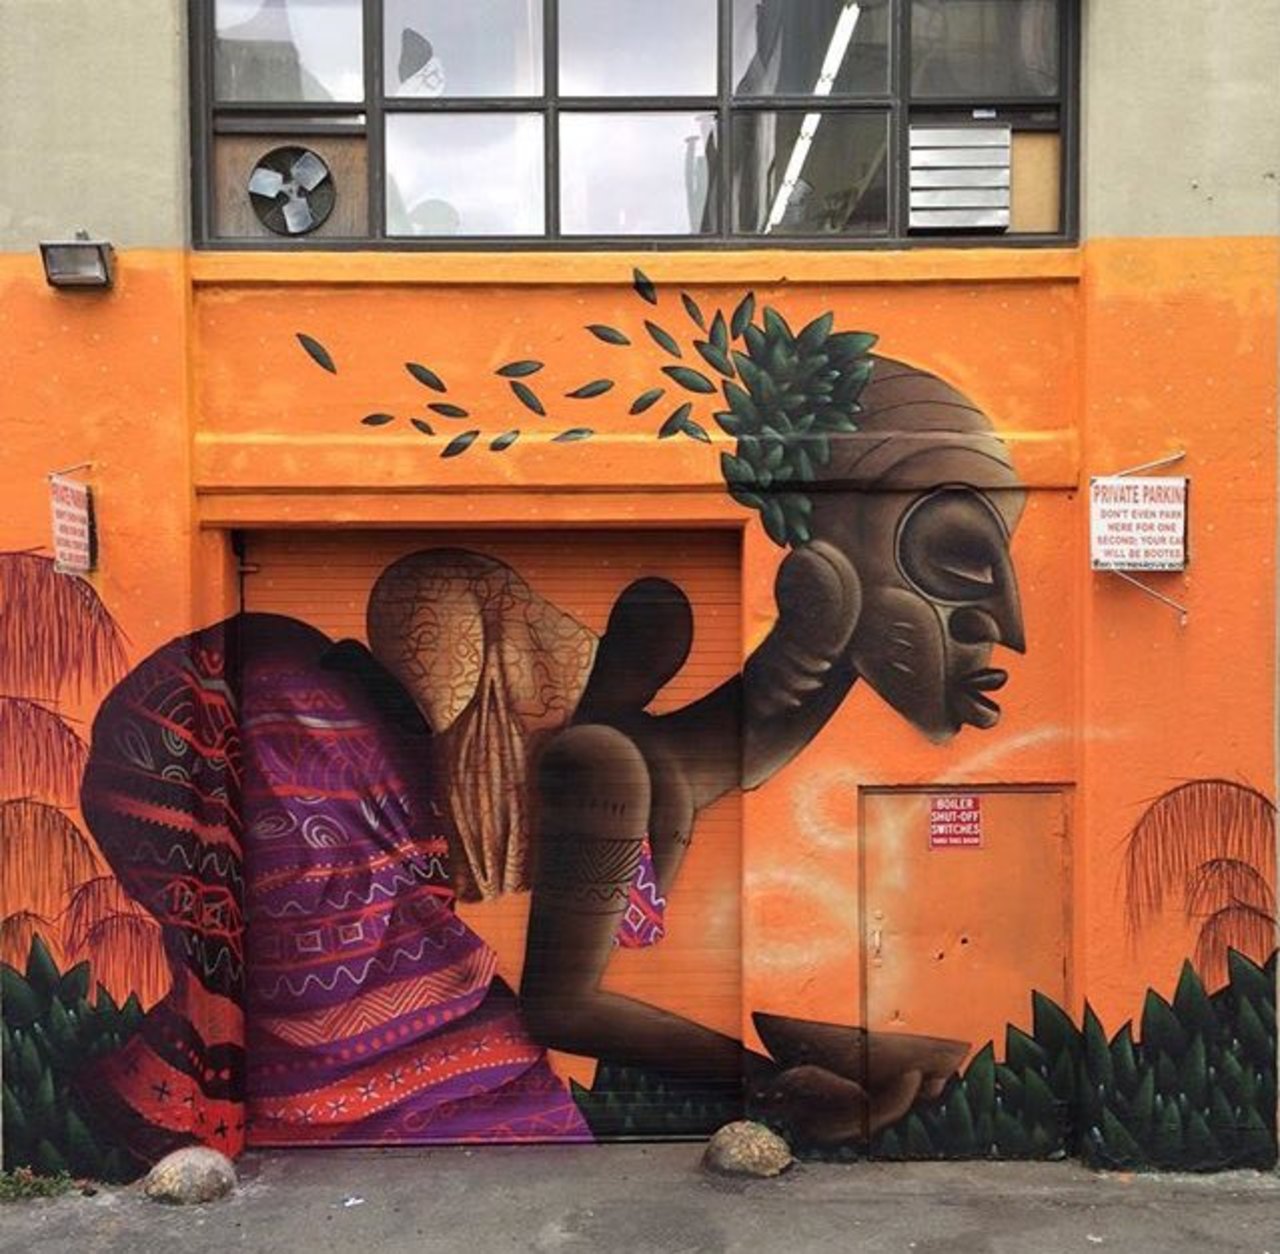 New Street Art by Alexandre Keto in NYC 

#art #graffiti #mural #streetart https://t.co/1Uz3DFgr3N googlestreetart chinatoniq